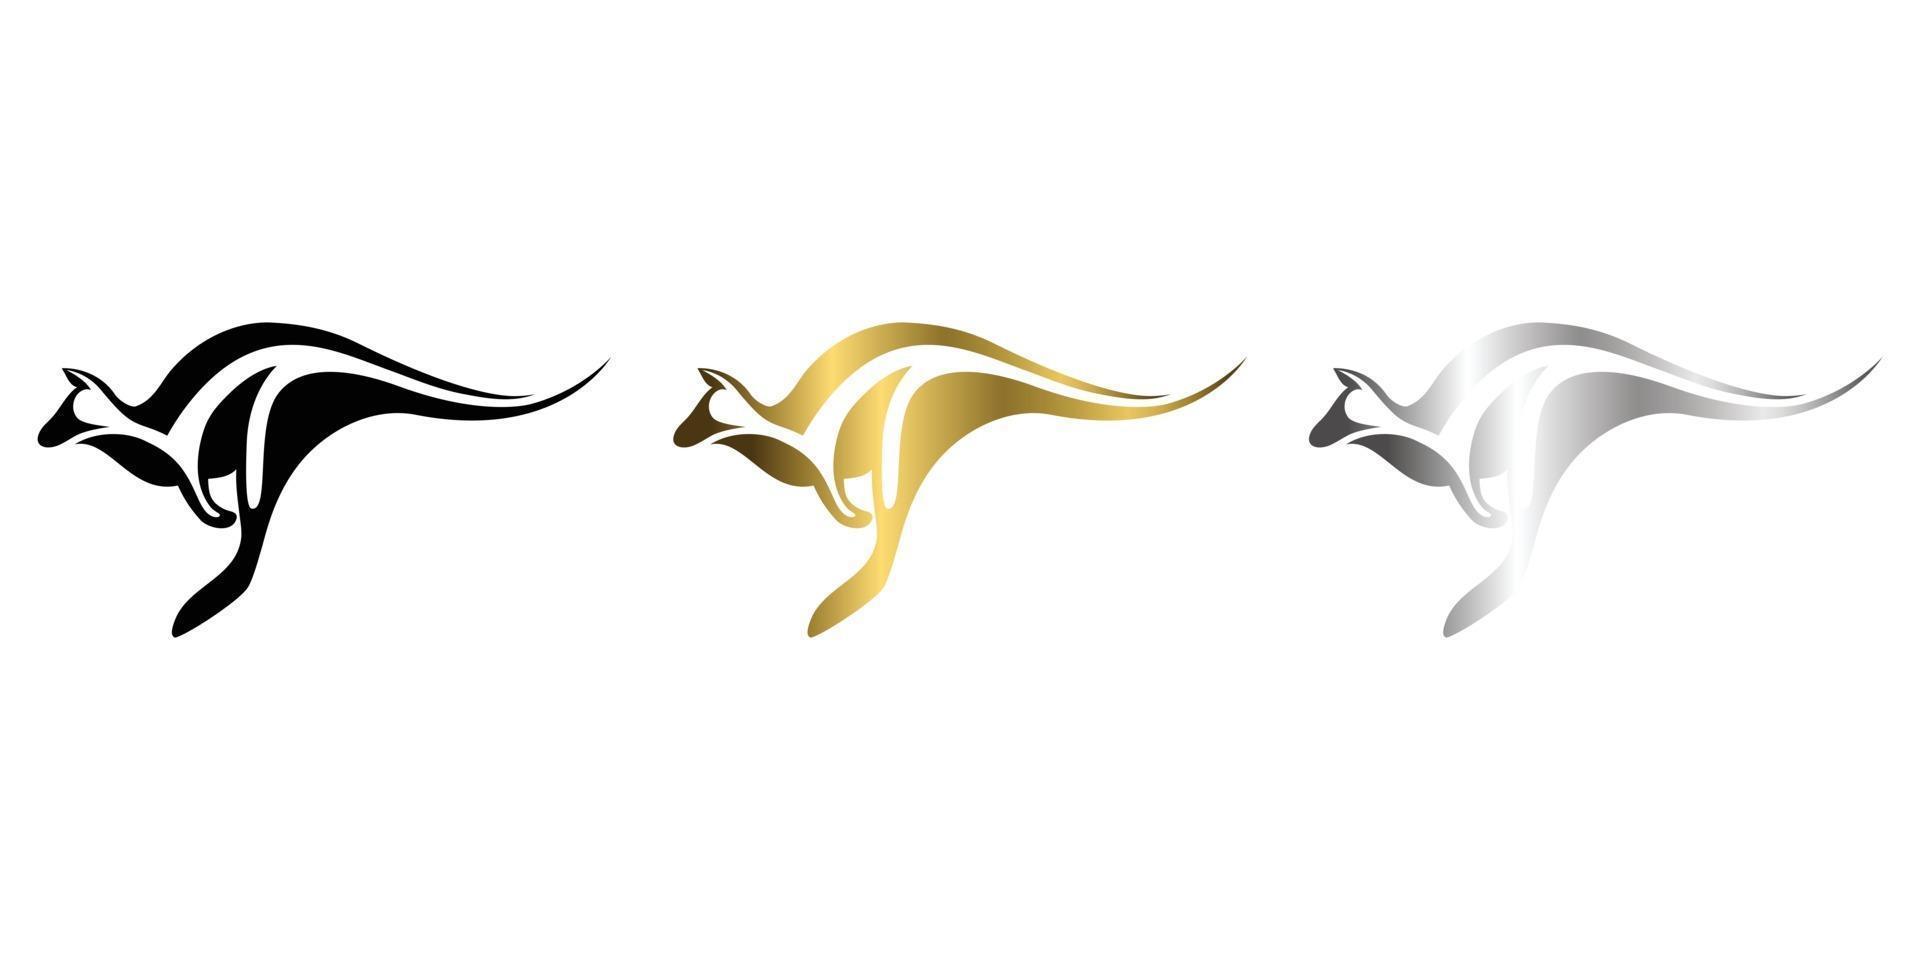 tre colori nero oro argento line art illustrazione vettoriale su sfondo bianco di un canguro adatto per fare logo